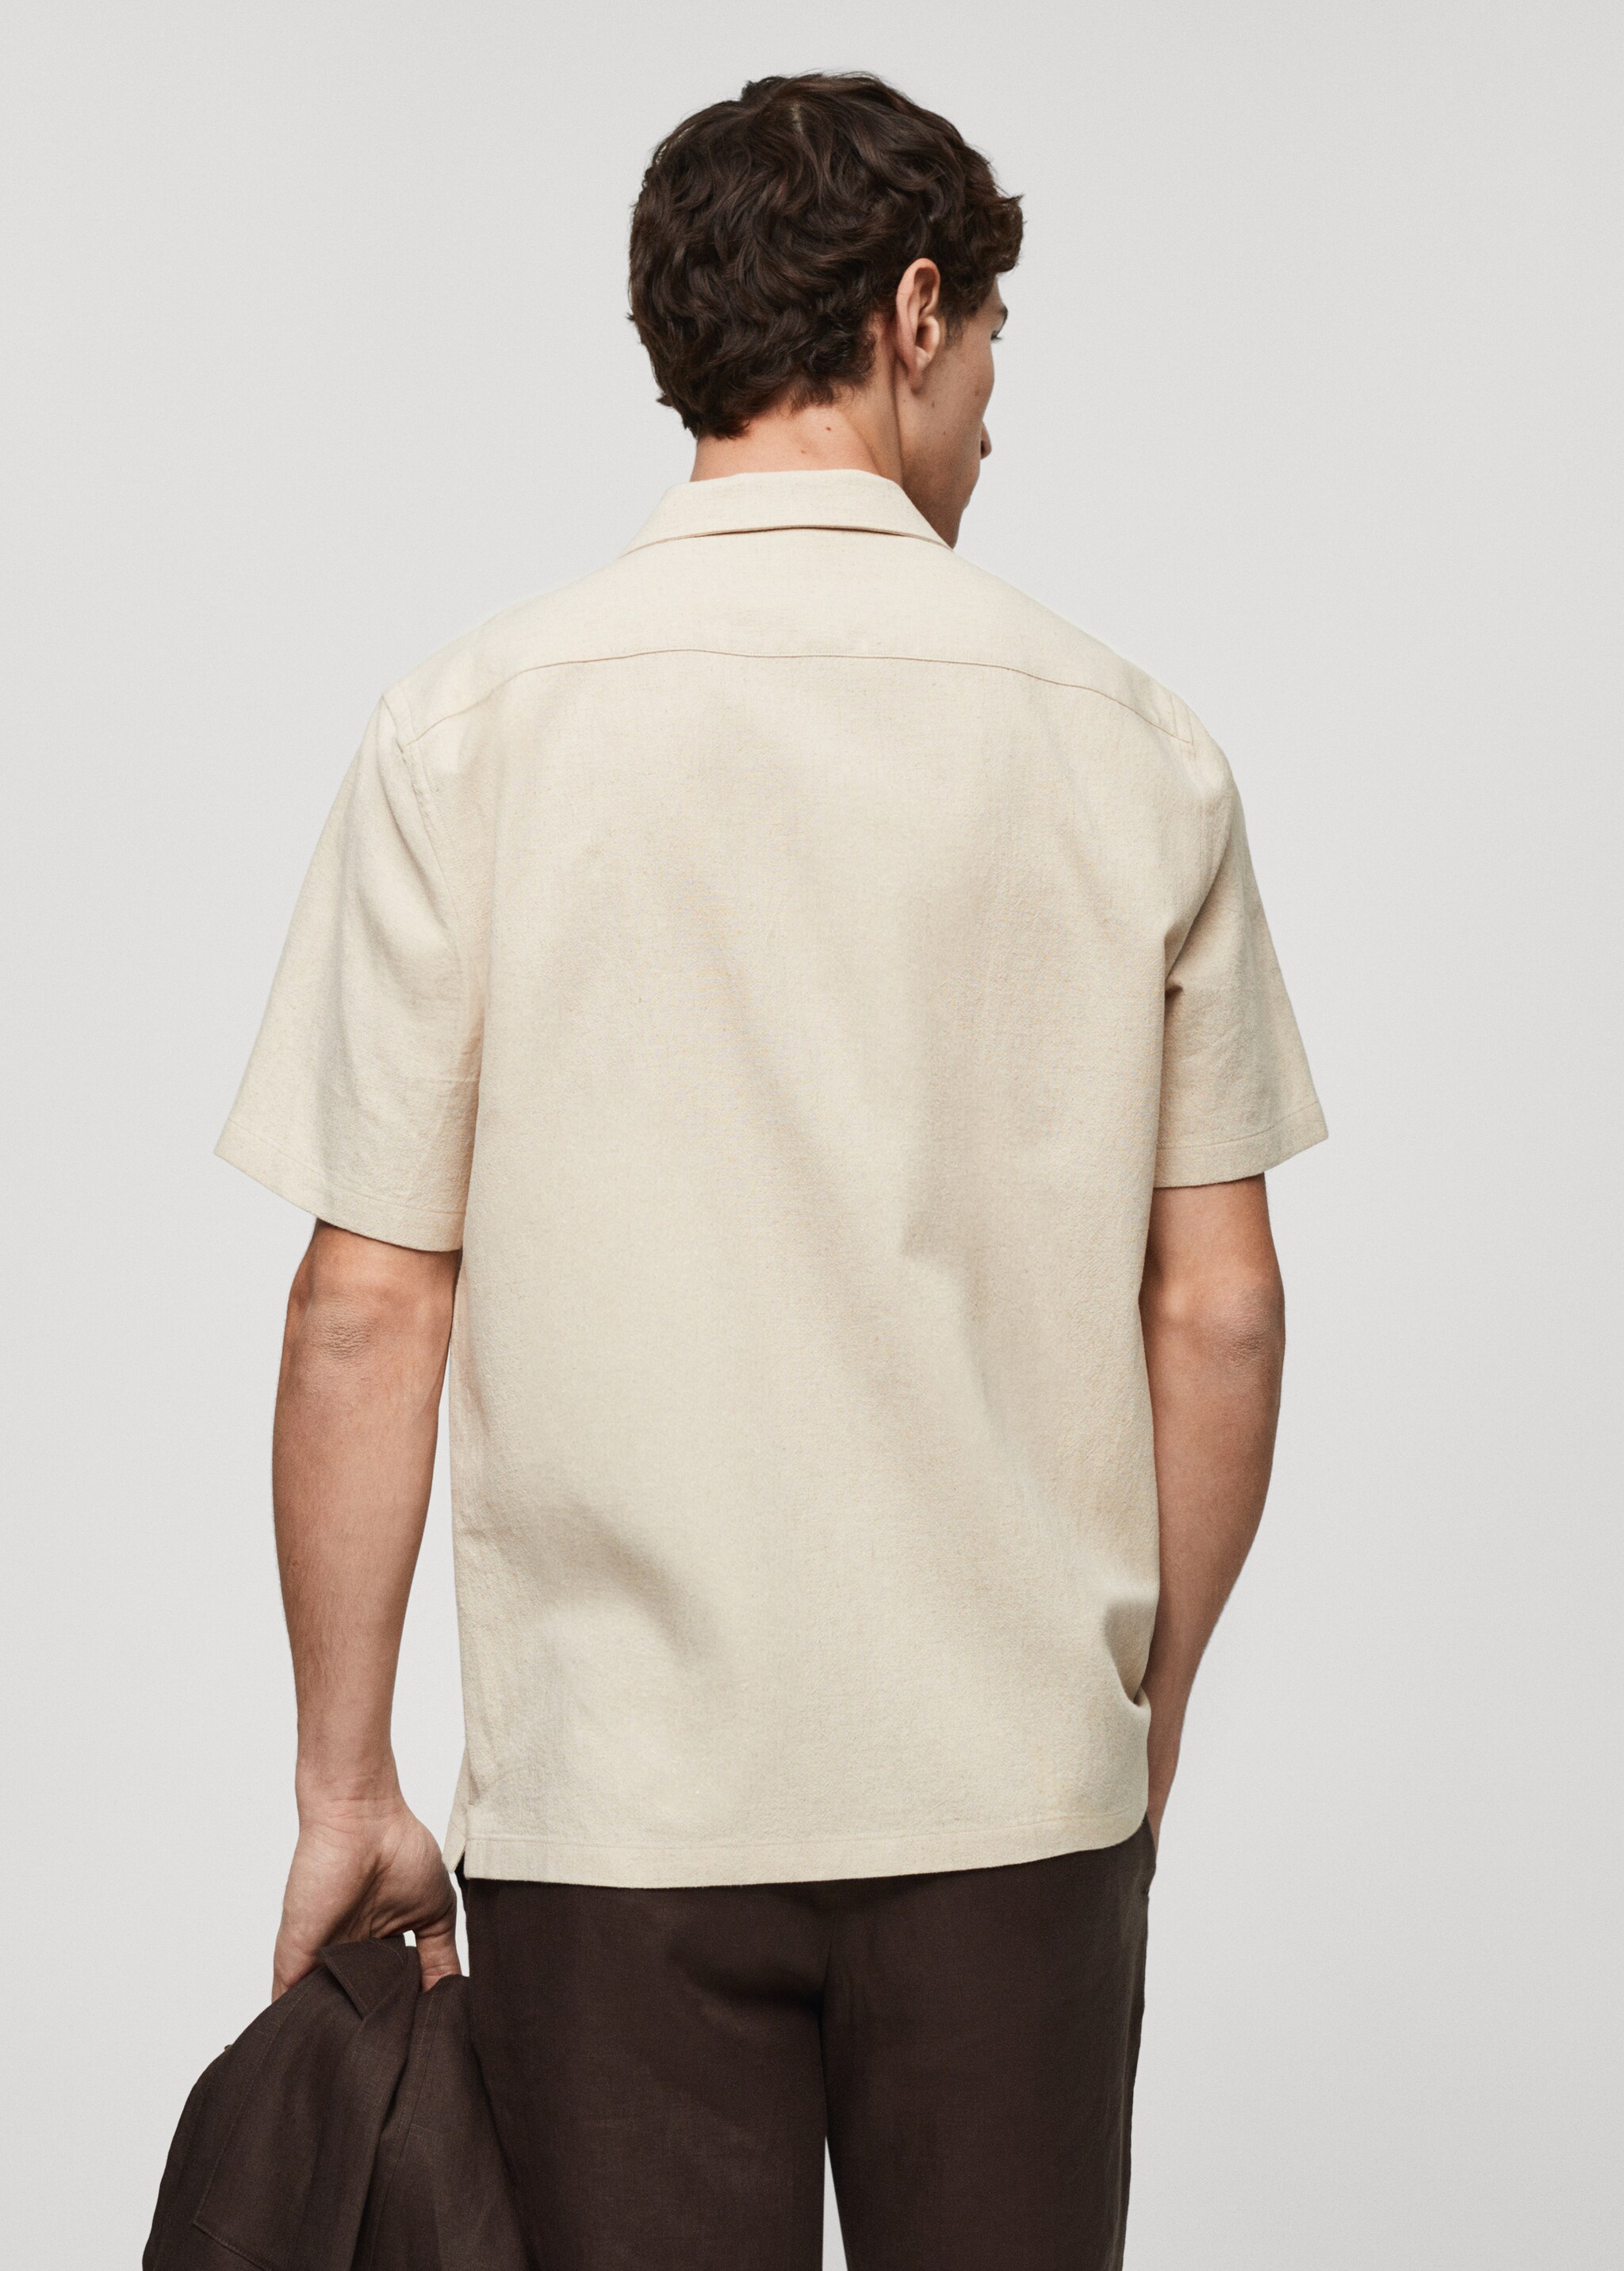 Camisa lino cuello bowling bolsillo - Reverso del artículo